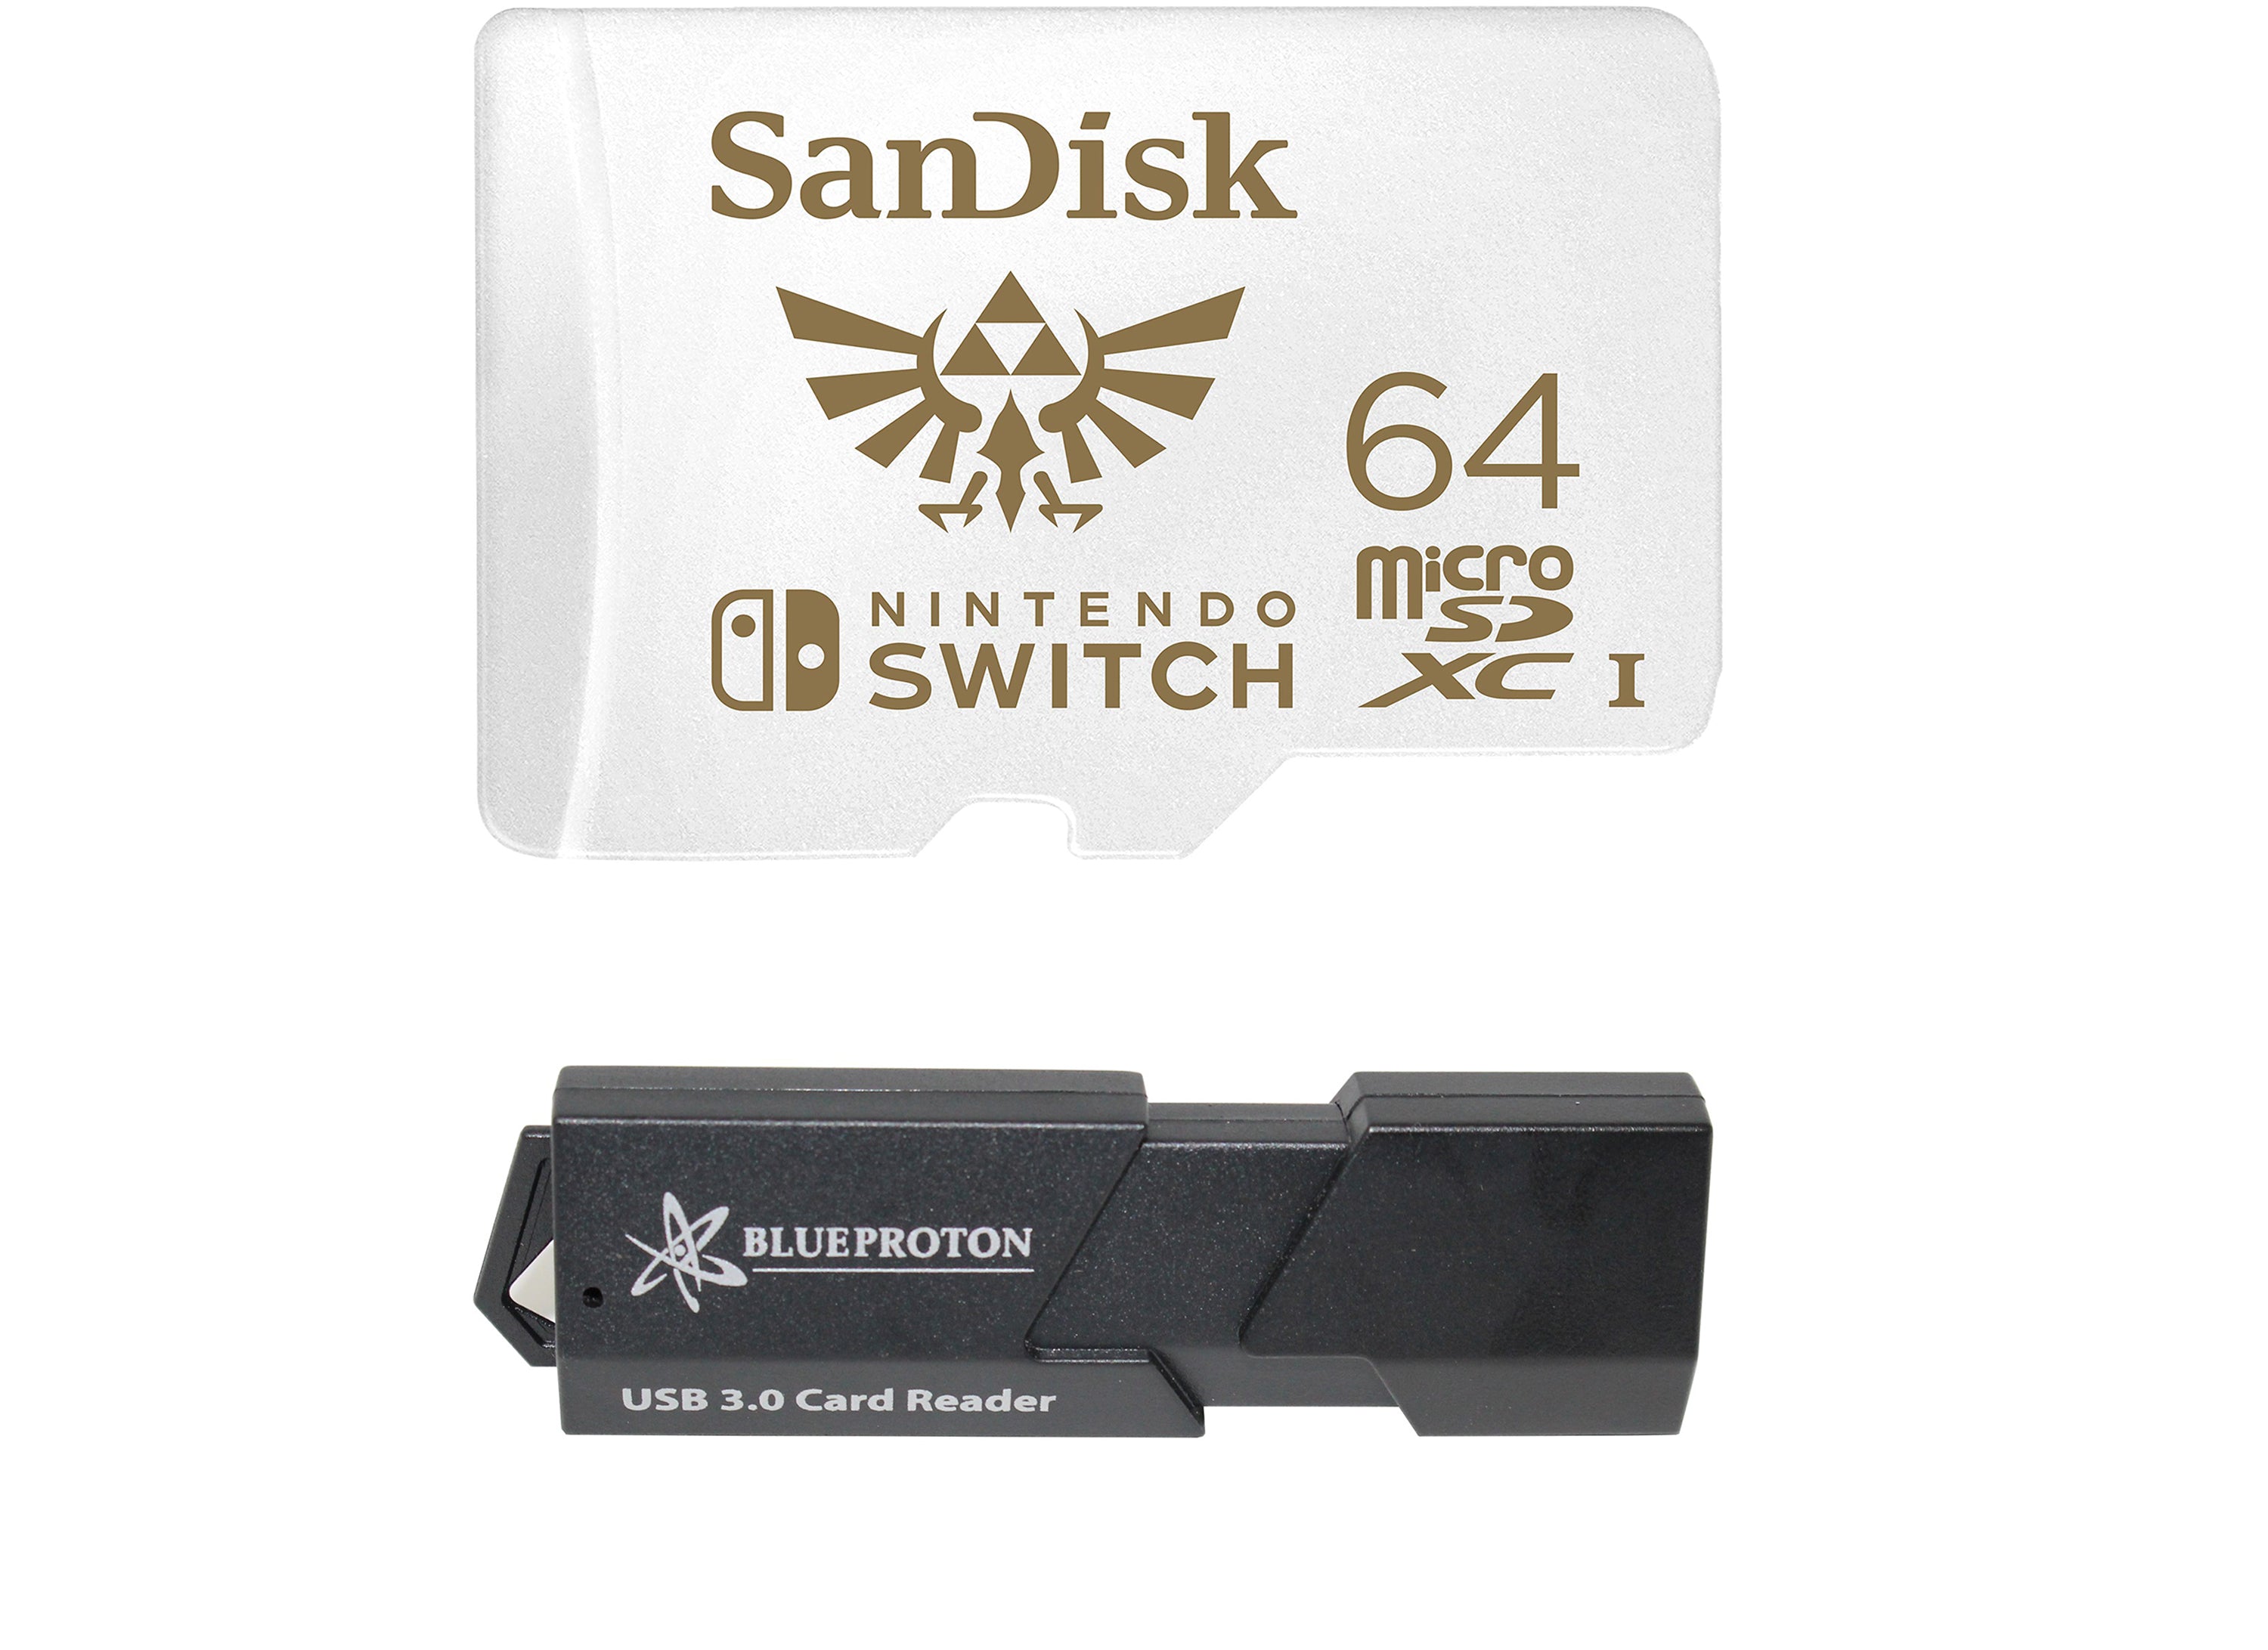 SanDisk 64GB MicroSDXC UHS-I Card for Nintendo Switch & BlueProton USB